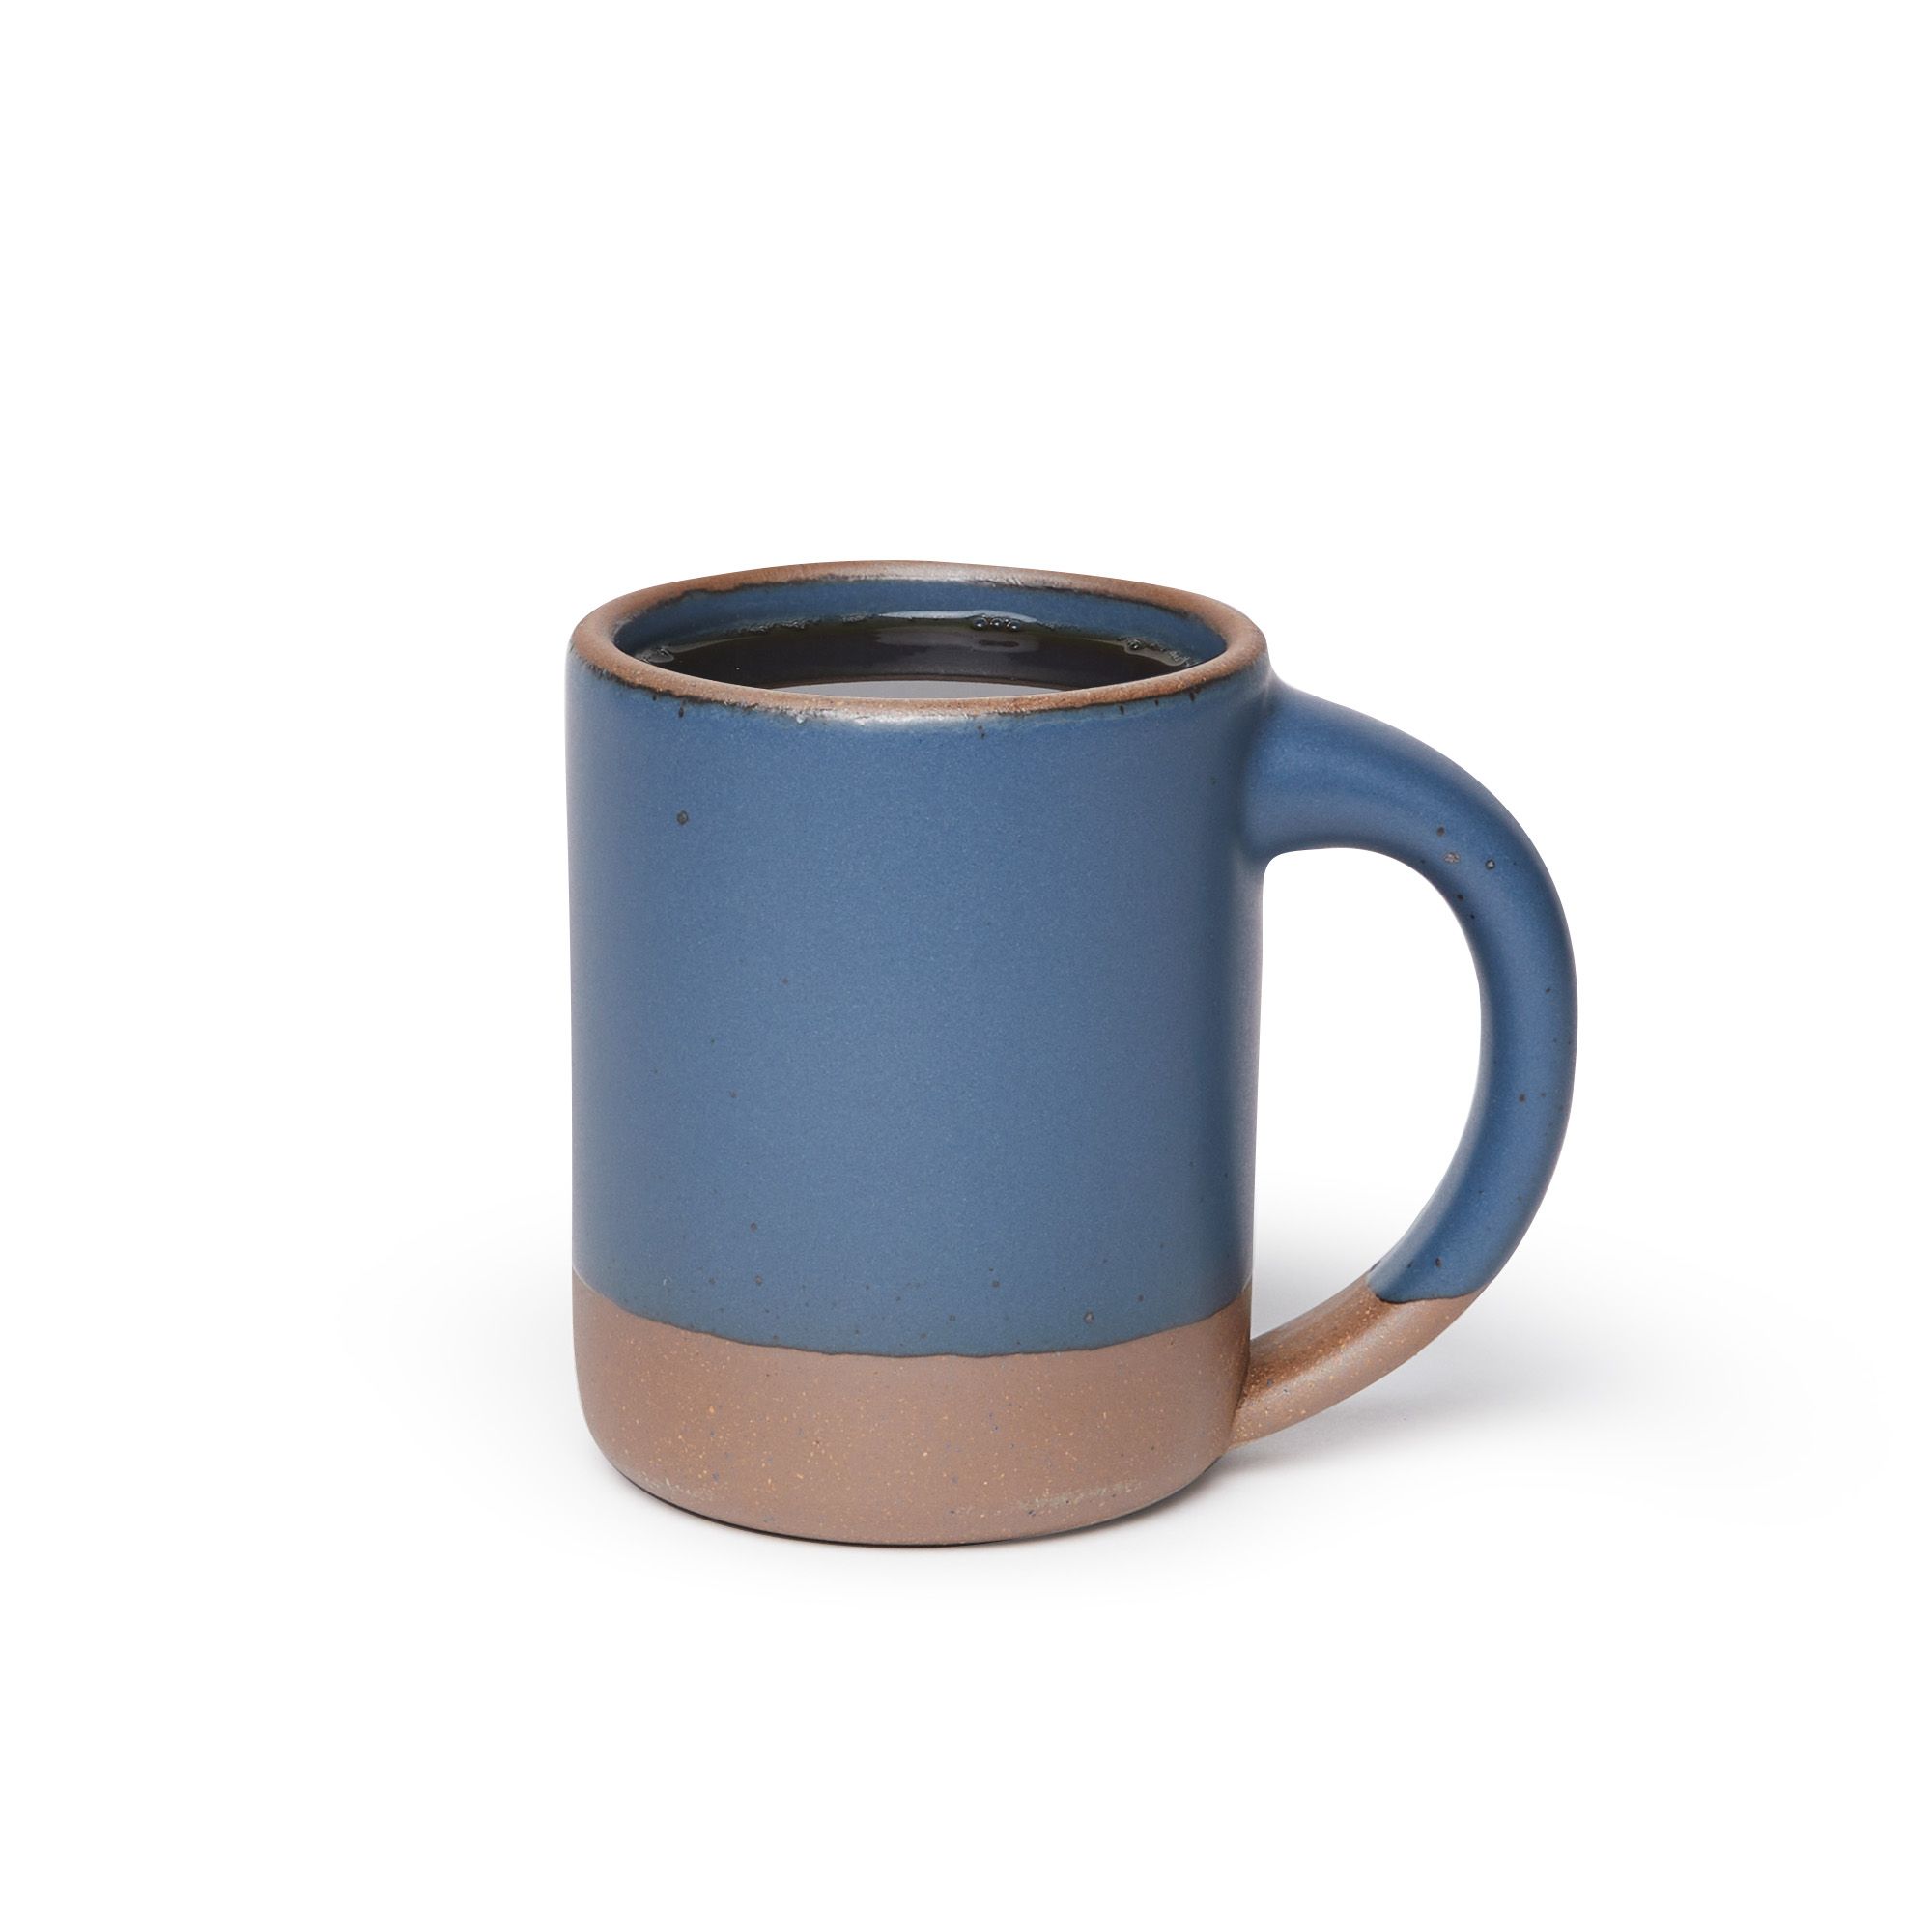 The Big Mug in Blue Ridge filled with coffee